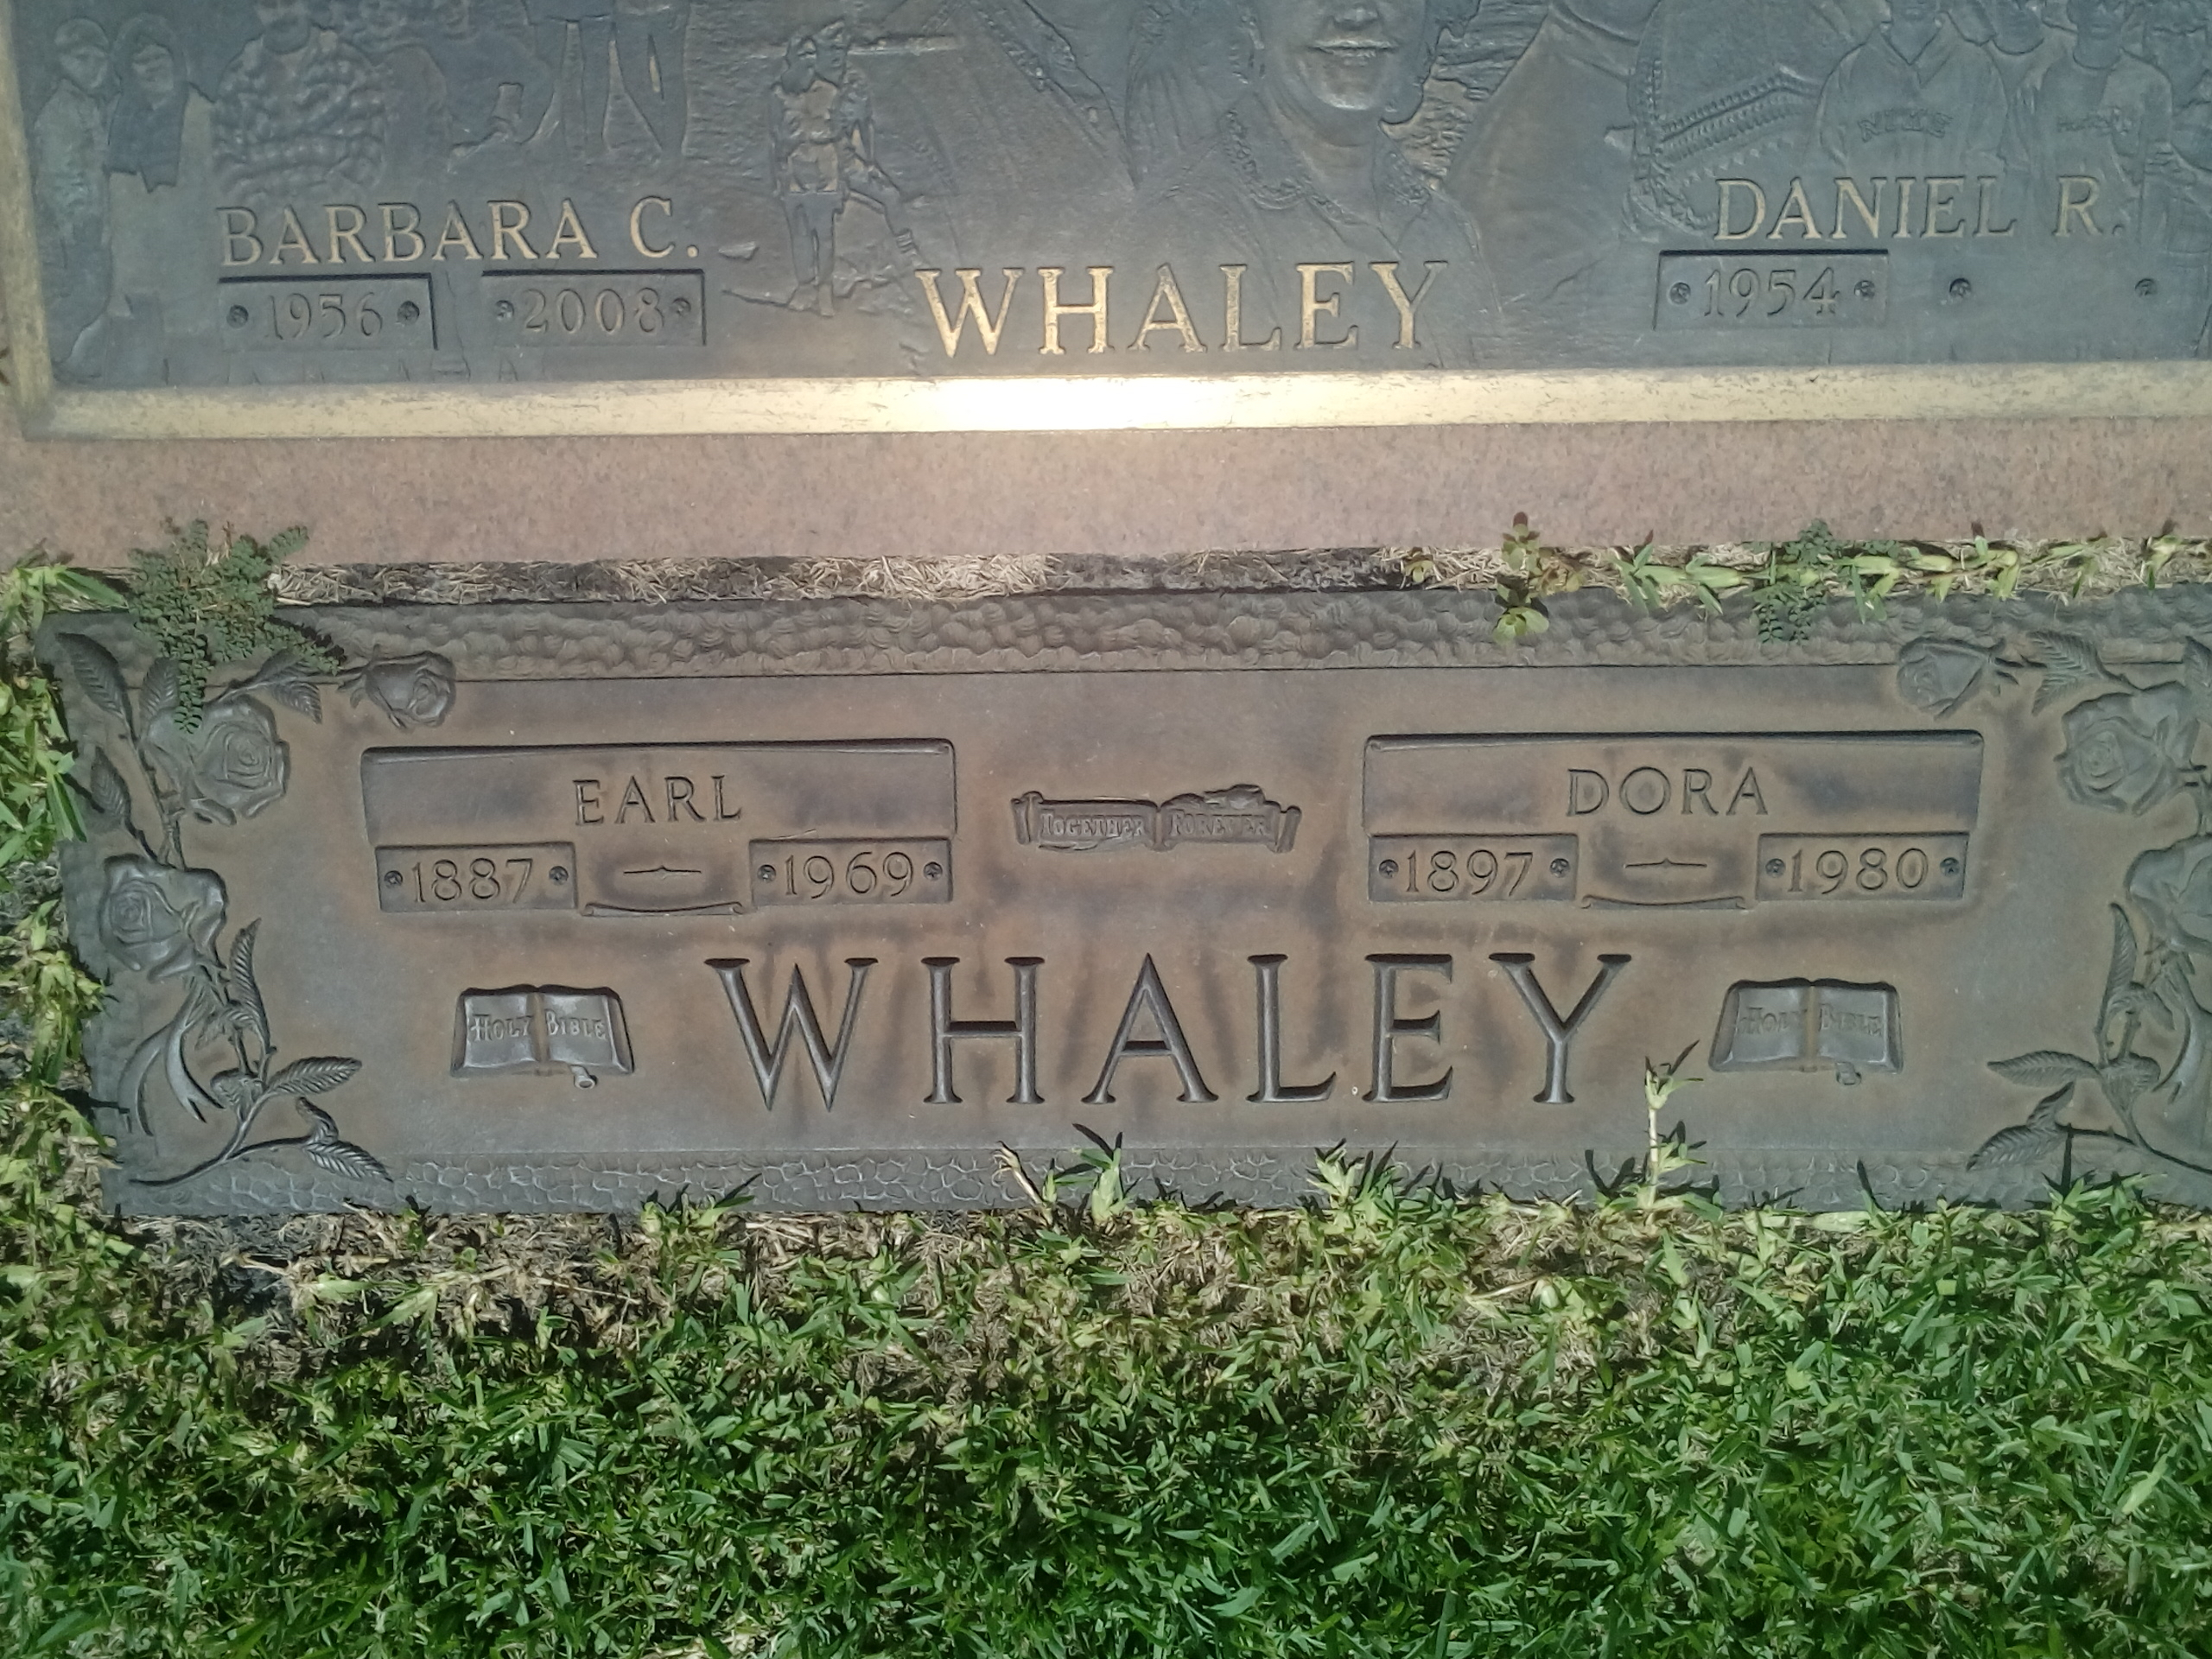 Earl Whaley